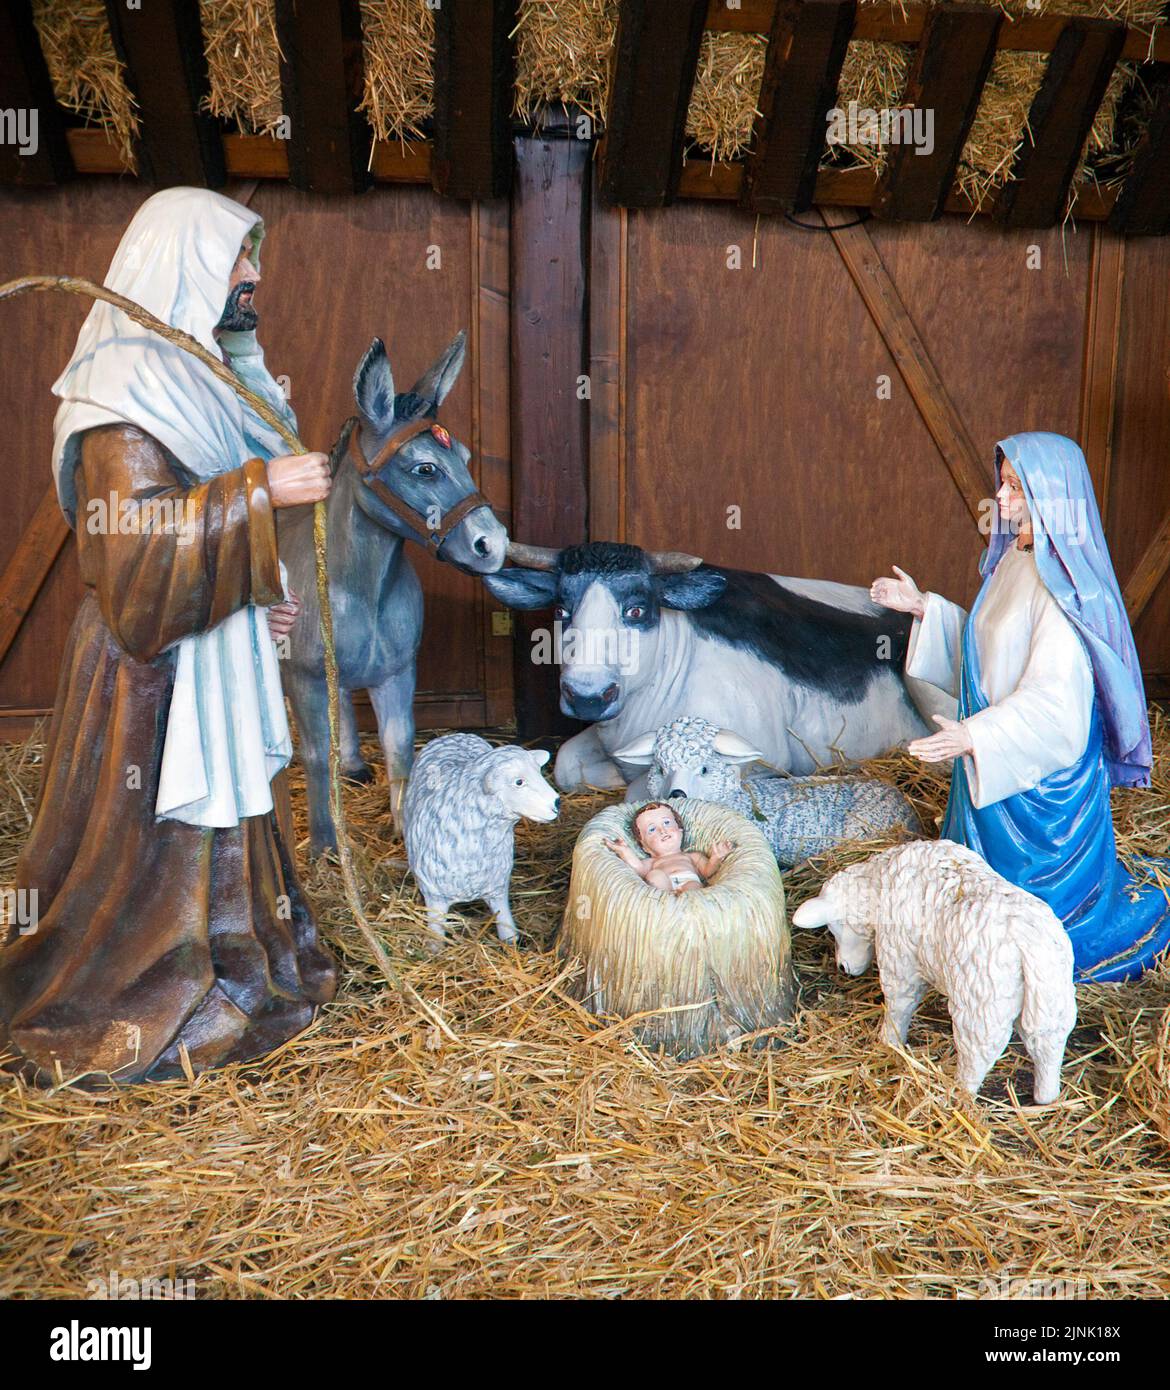 Naissance de jésus christ comme une scène de nativité, marché de Noël à Trèves, Rhénanie-Palatinat, Allemagne, Europe Banque D'Images